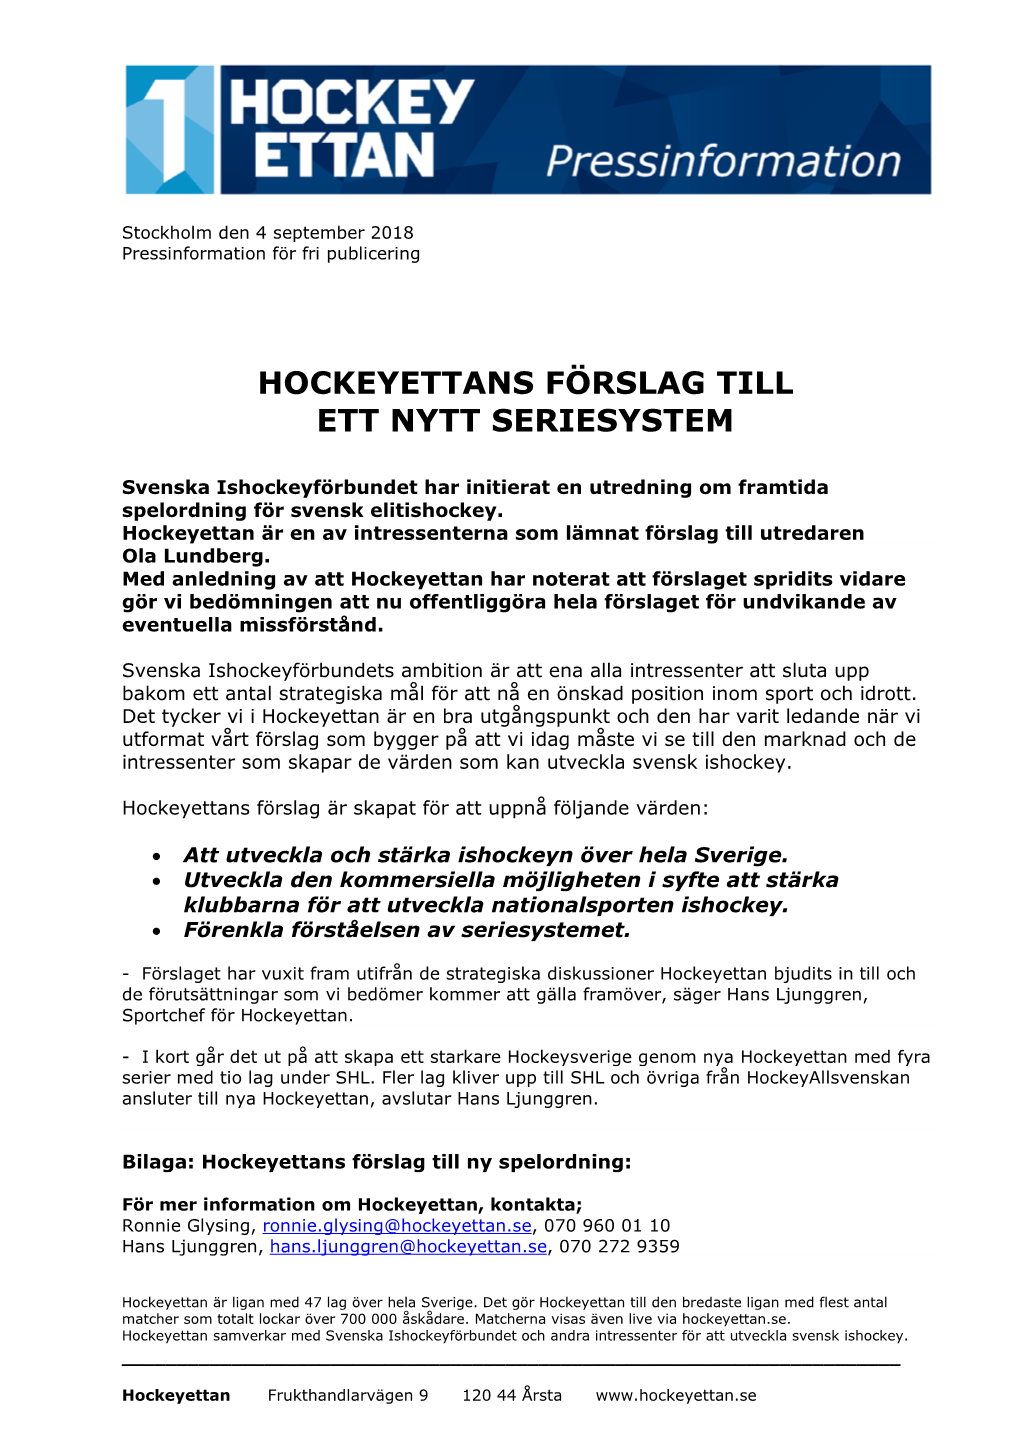 Hockeyettans Förslag Till Ett Nytt Seriesystem